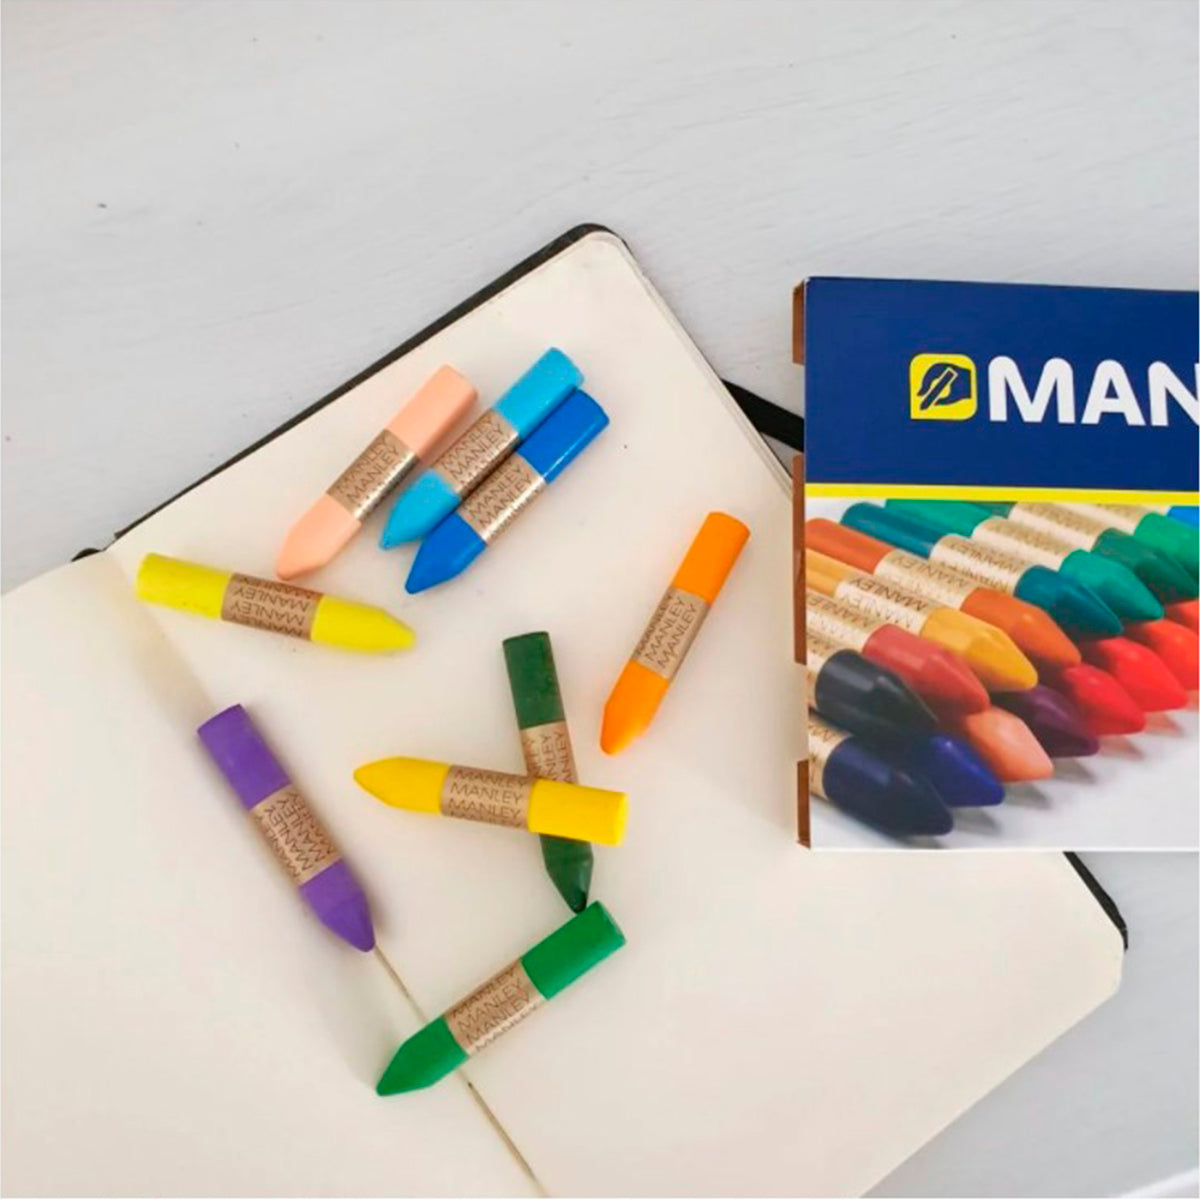 ALPINO Manley - Caja con 15 Lápices de Cera Blanda en Colores Brillantes